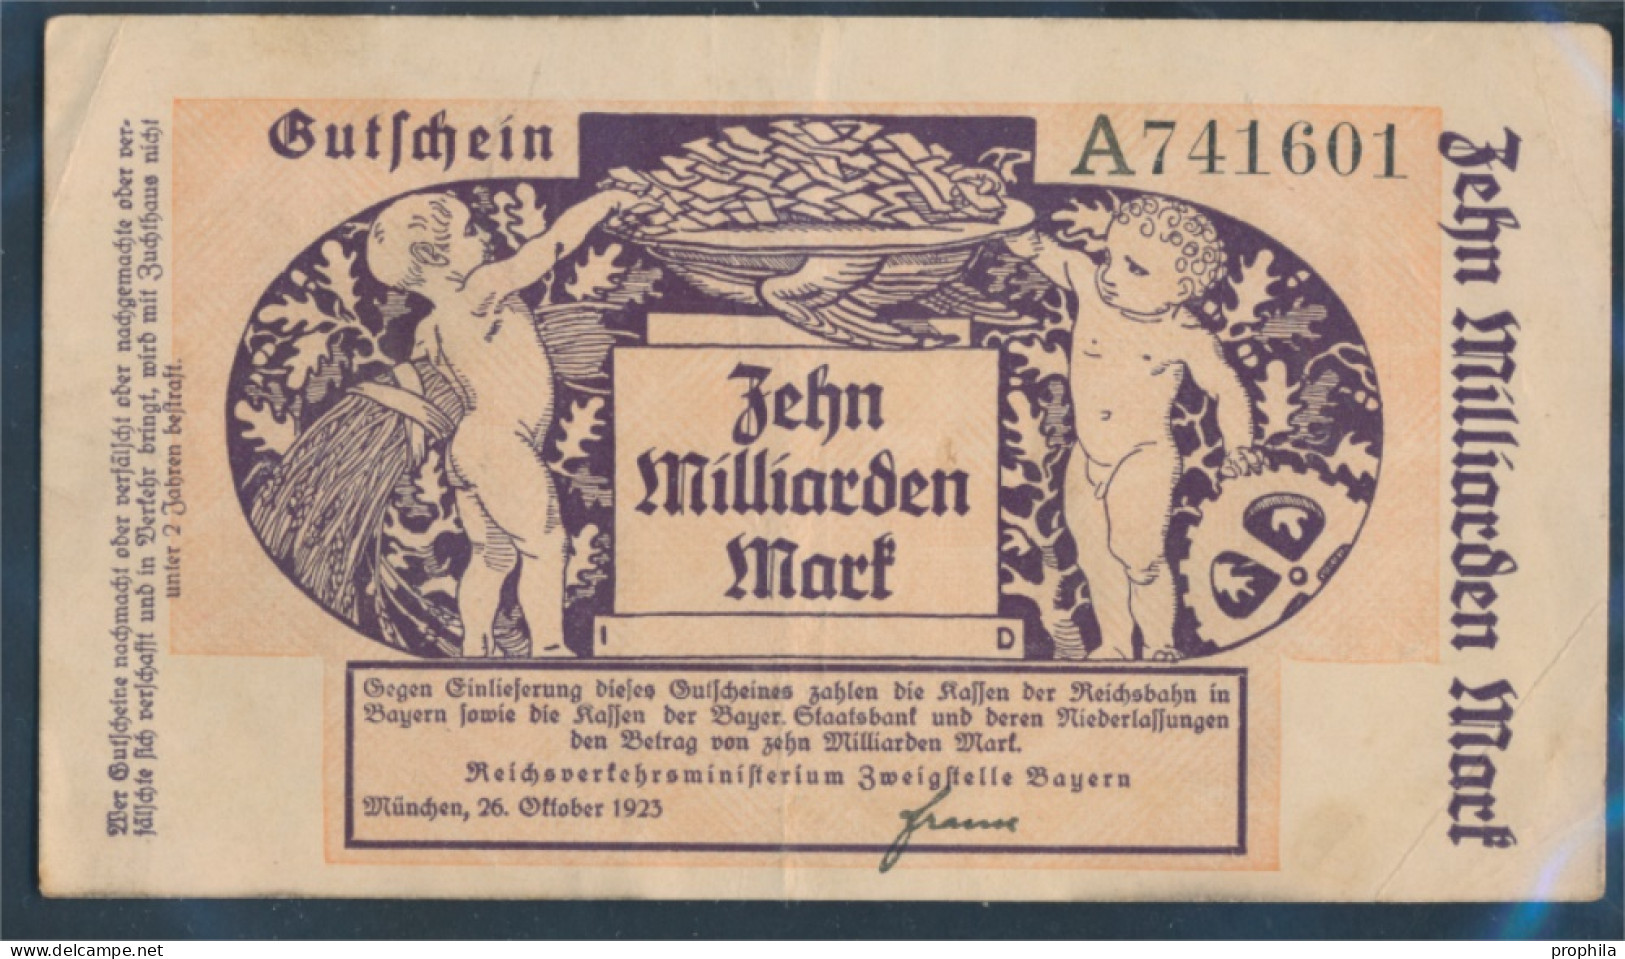 Bayern Pick-Nr: S1105 Inflationsgeld Der Deutschen Reichsbahn Bayern Gebraucht (III) 1923 10 Milliarden Mark (10288404 - 10 Milliarden Mark